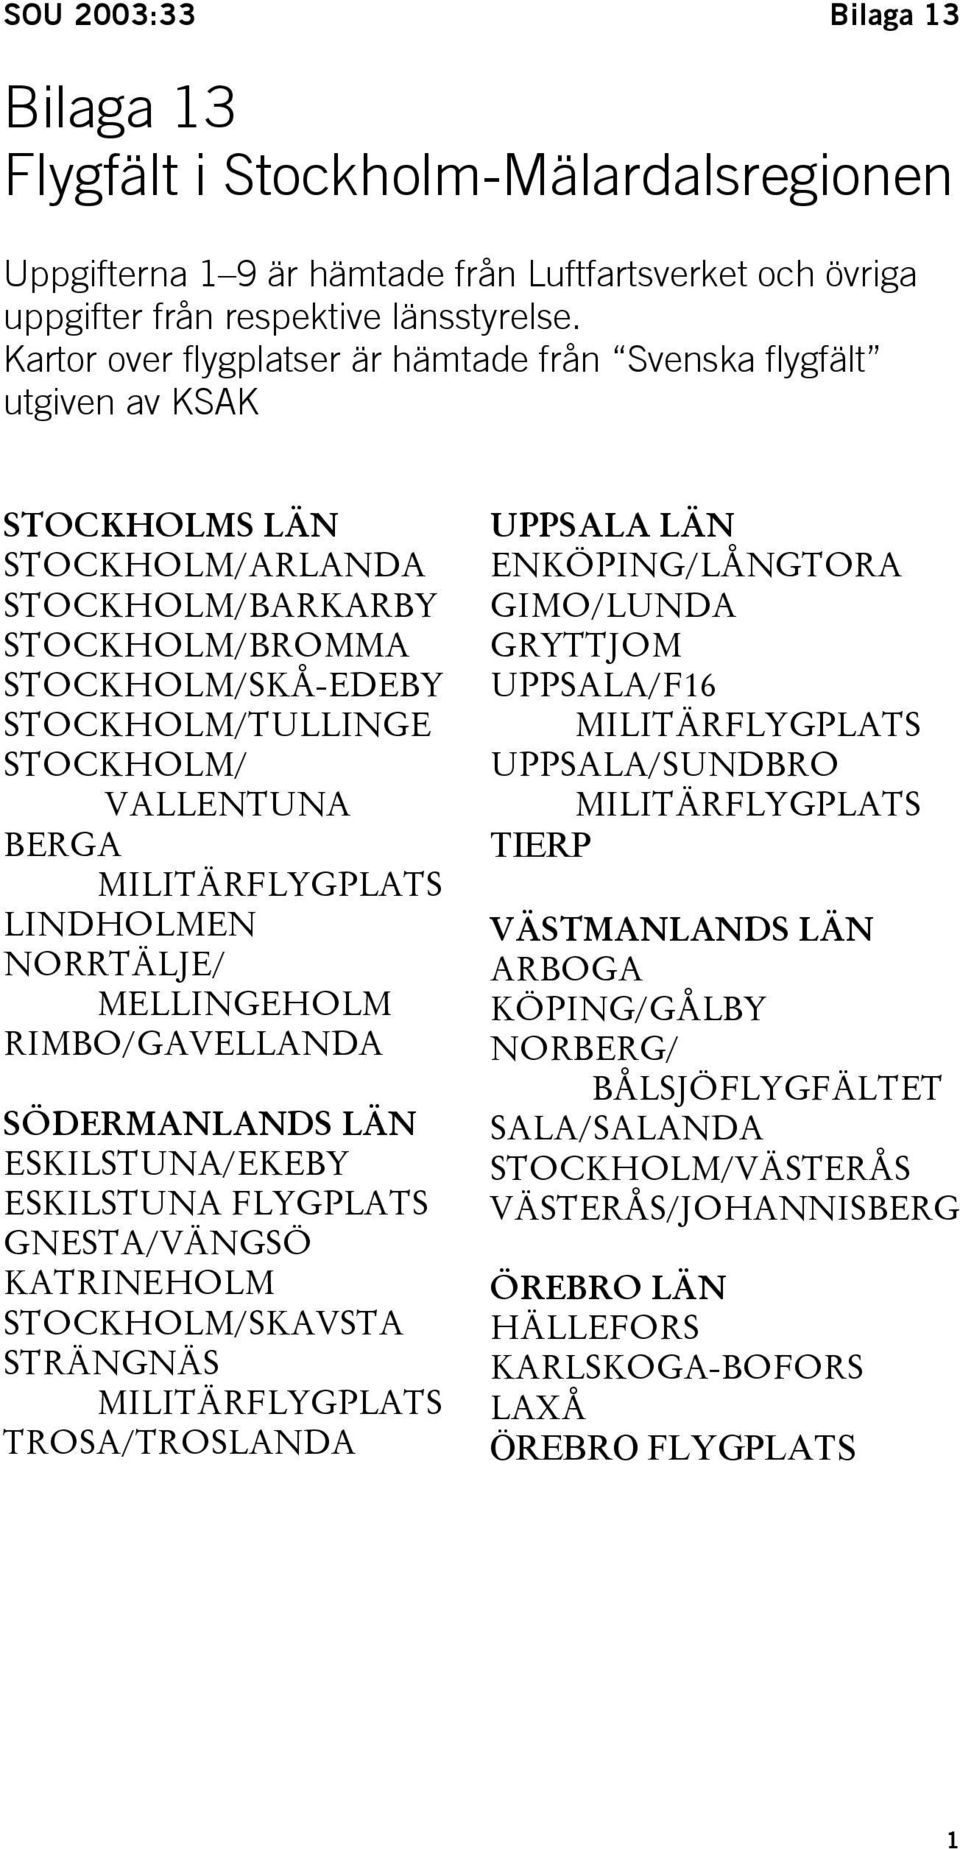 VALLENTUNA BERGA MILITÄRFLYGPLATS LINDHOLMEN NORRTÄLJE/ MELLINGEHOLM RIMBO/GAVELLANDA SÖDERMANLANDS LÄN ESKILSTUNA/EKEBY ESKILSTUNA FLYGPLATS GNESTA/VÄNGSÖ KATRINEHOLM STOCKHOLM/SKAVSTA STRÄNGNÄS